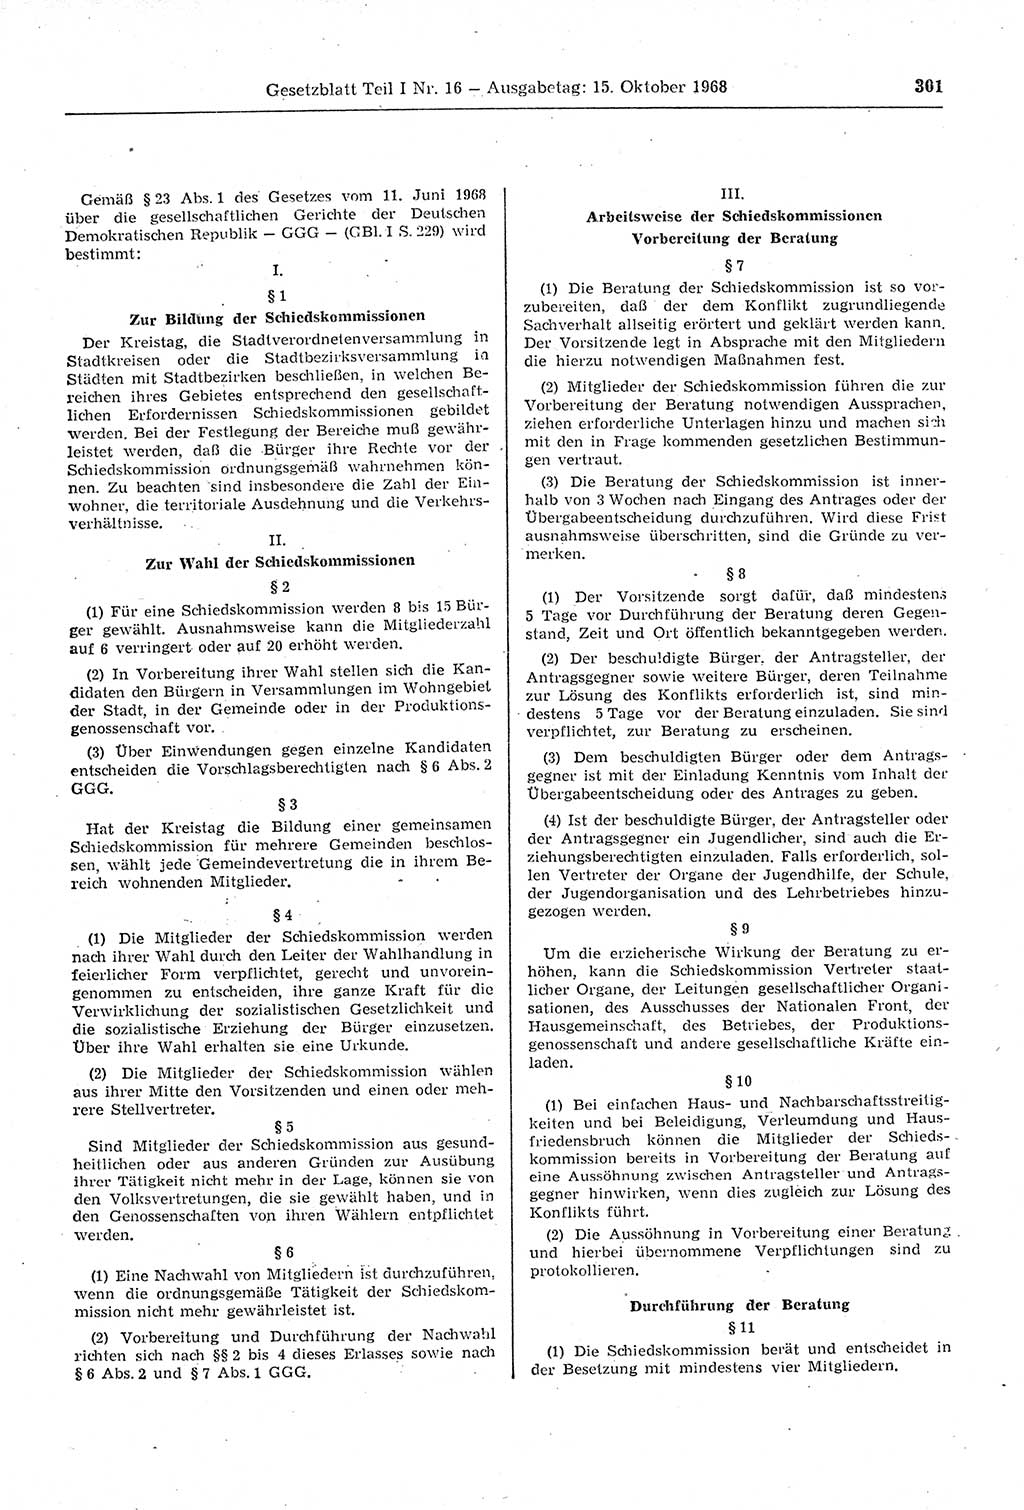 Gesetzblatt (GBl.) der Deutschen Demokratischen Republik (DDR) Teil Ⅰ 1968, Seite 301 (GBl. DDR Ⅰ 1968, S. 301)